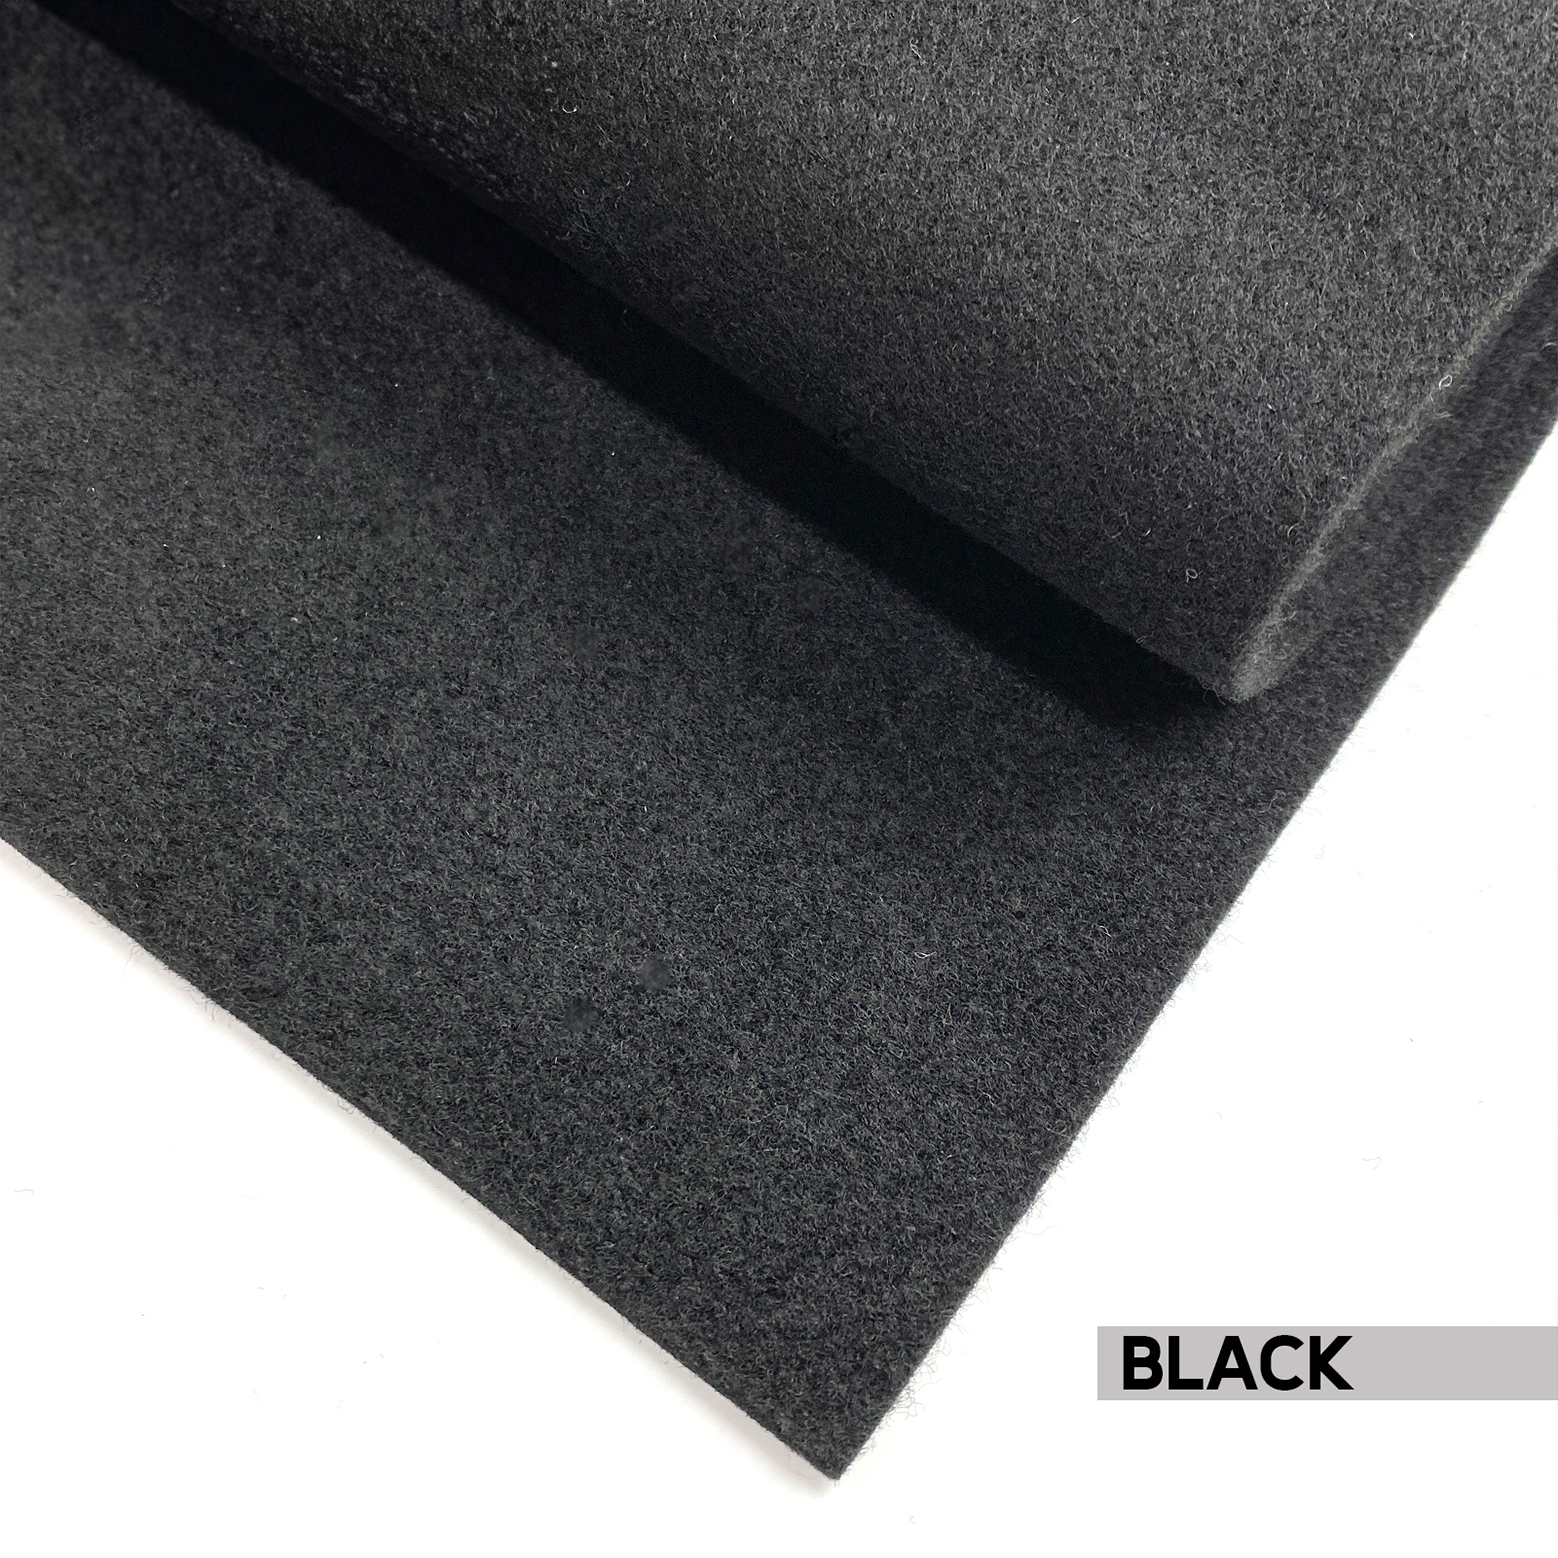 Auto Carpet - Black 1m